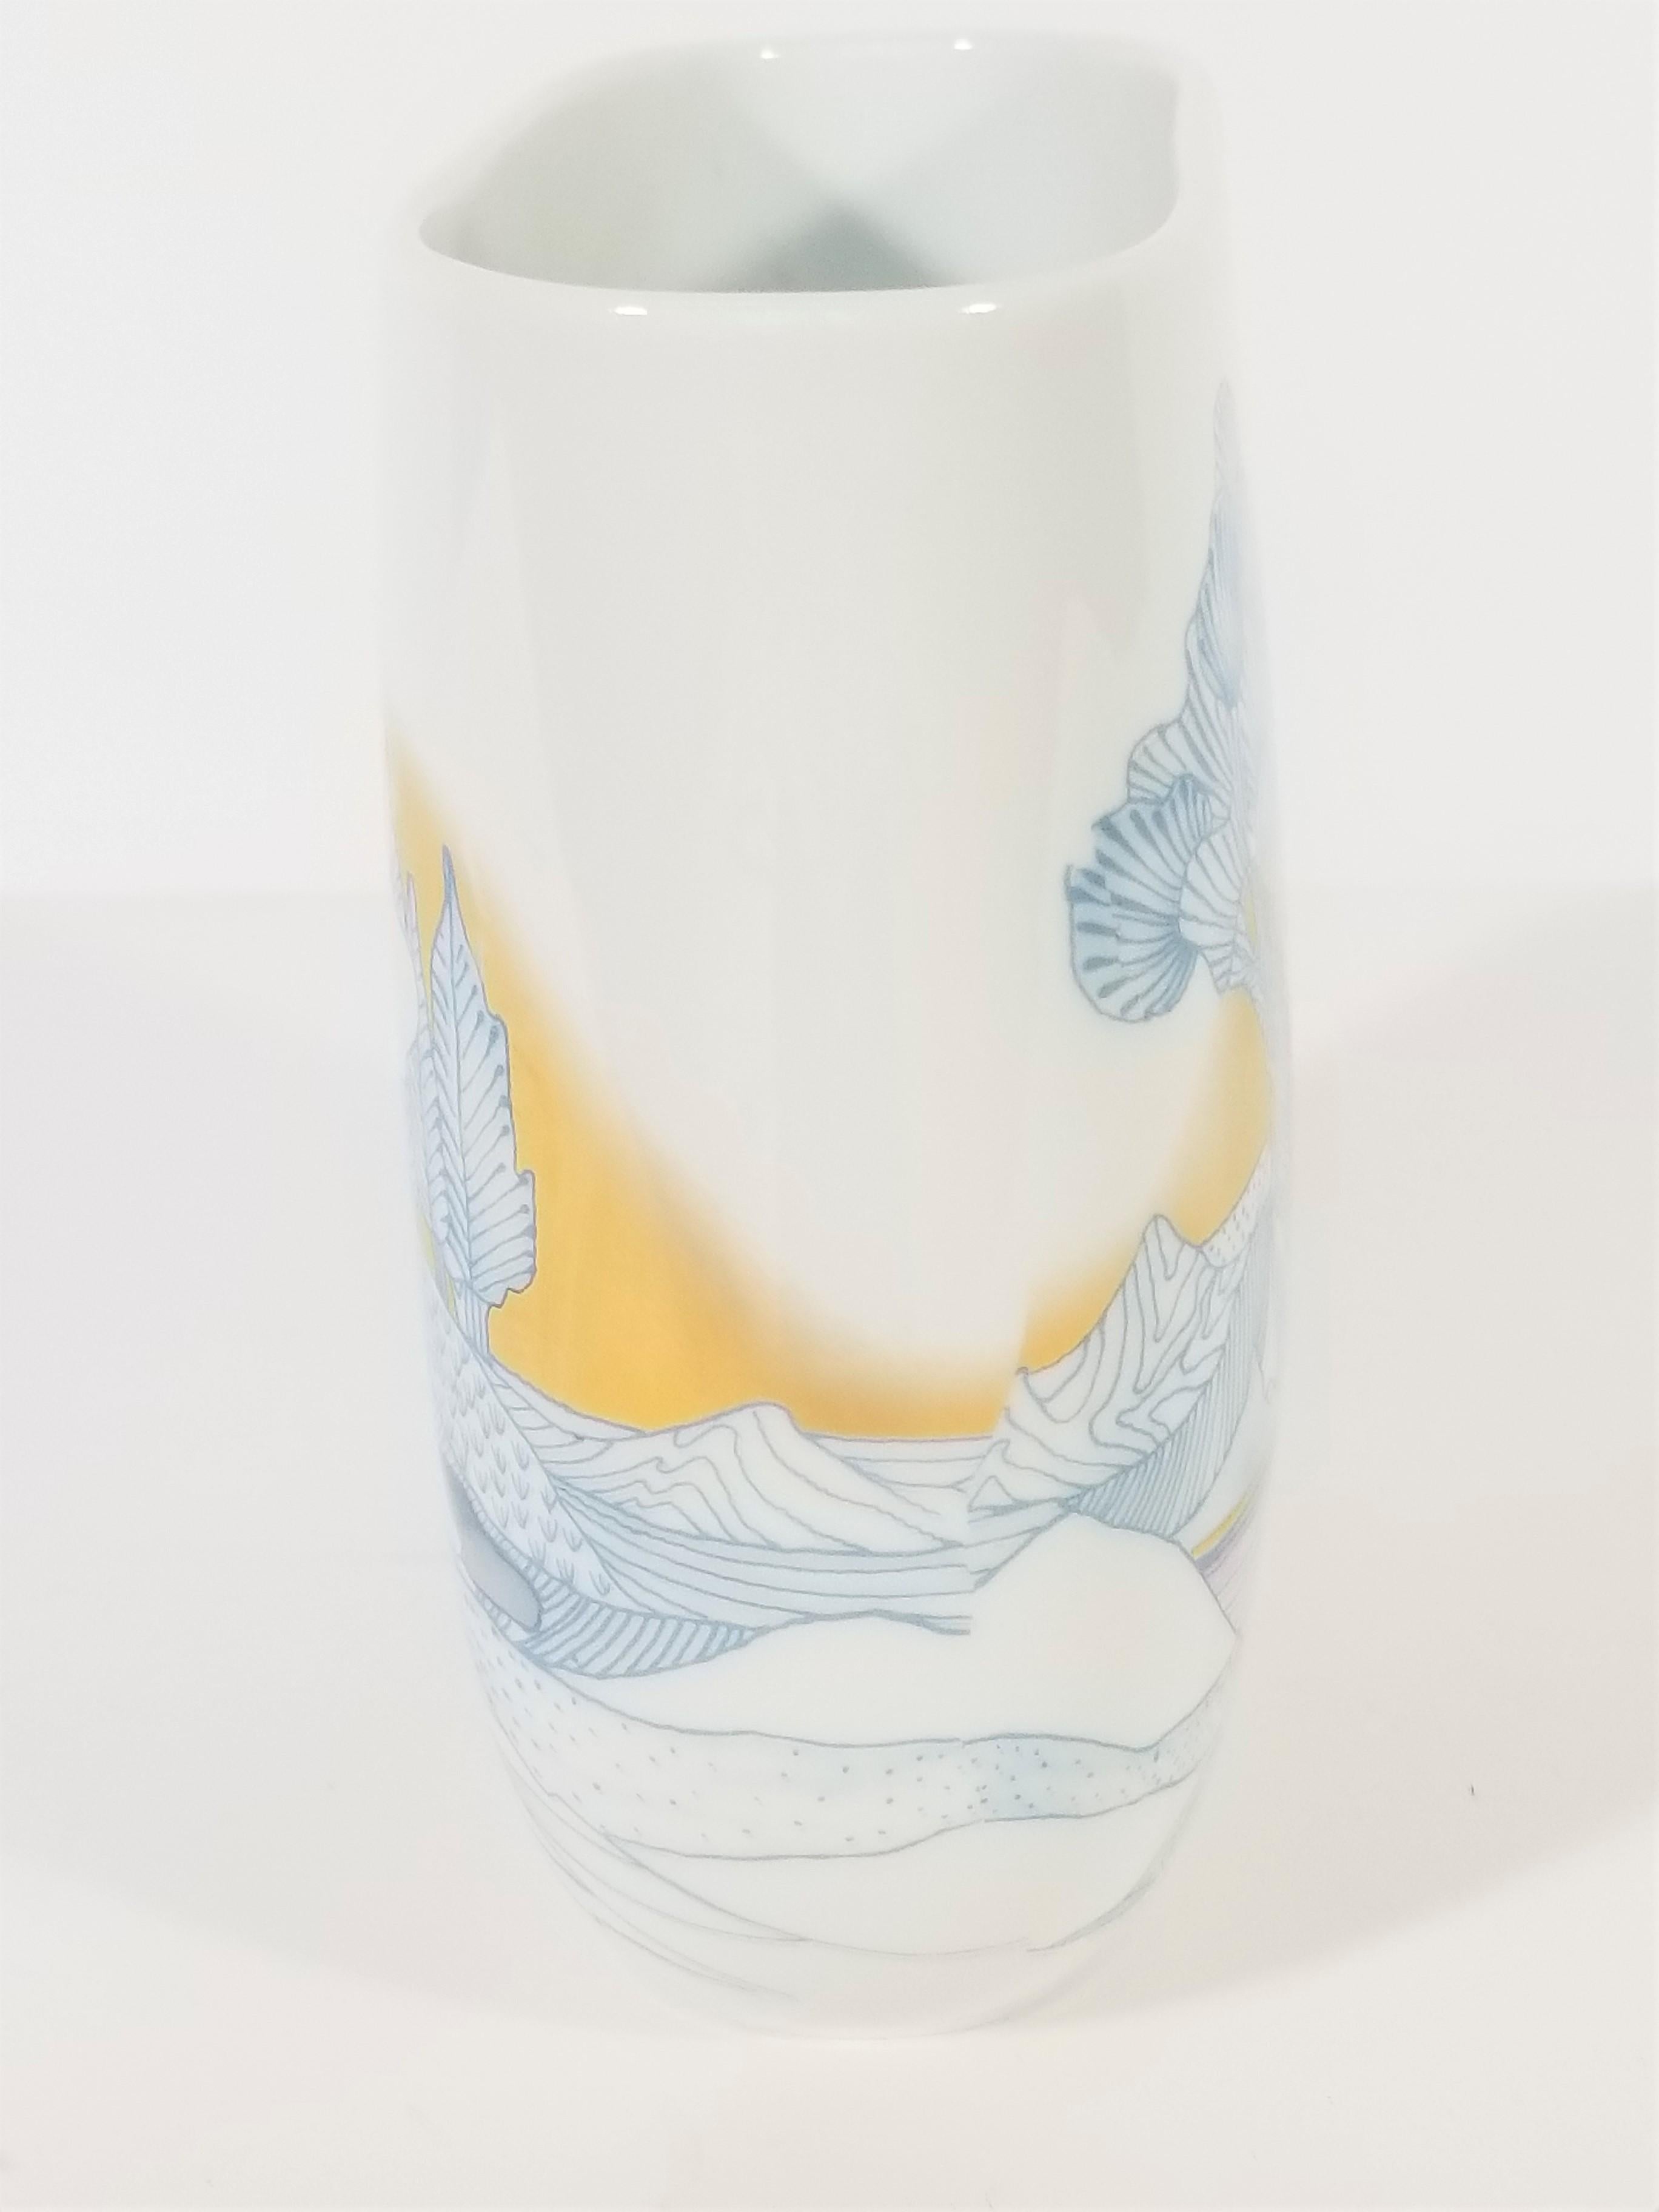  Rosenthal, Vase Germany Porcelain Mid Century 1970s Asian Inspired  6